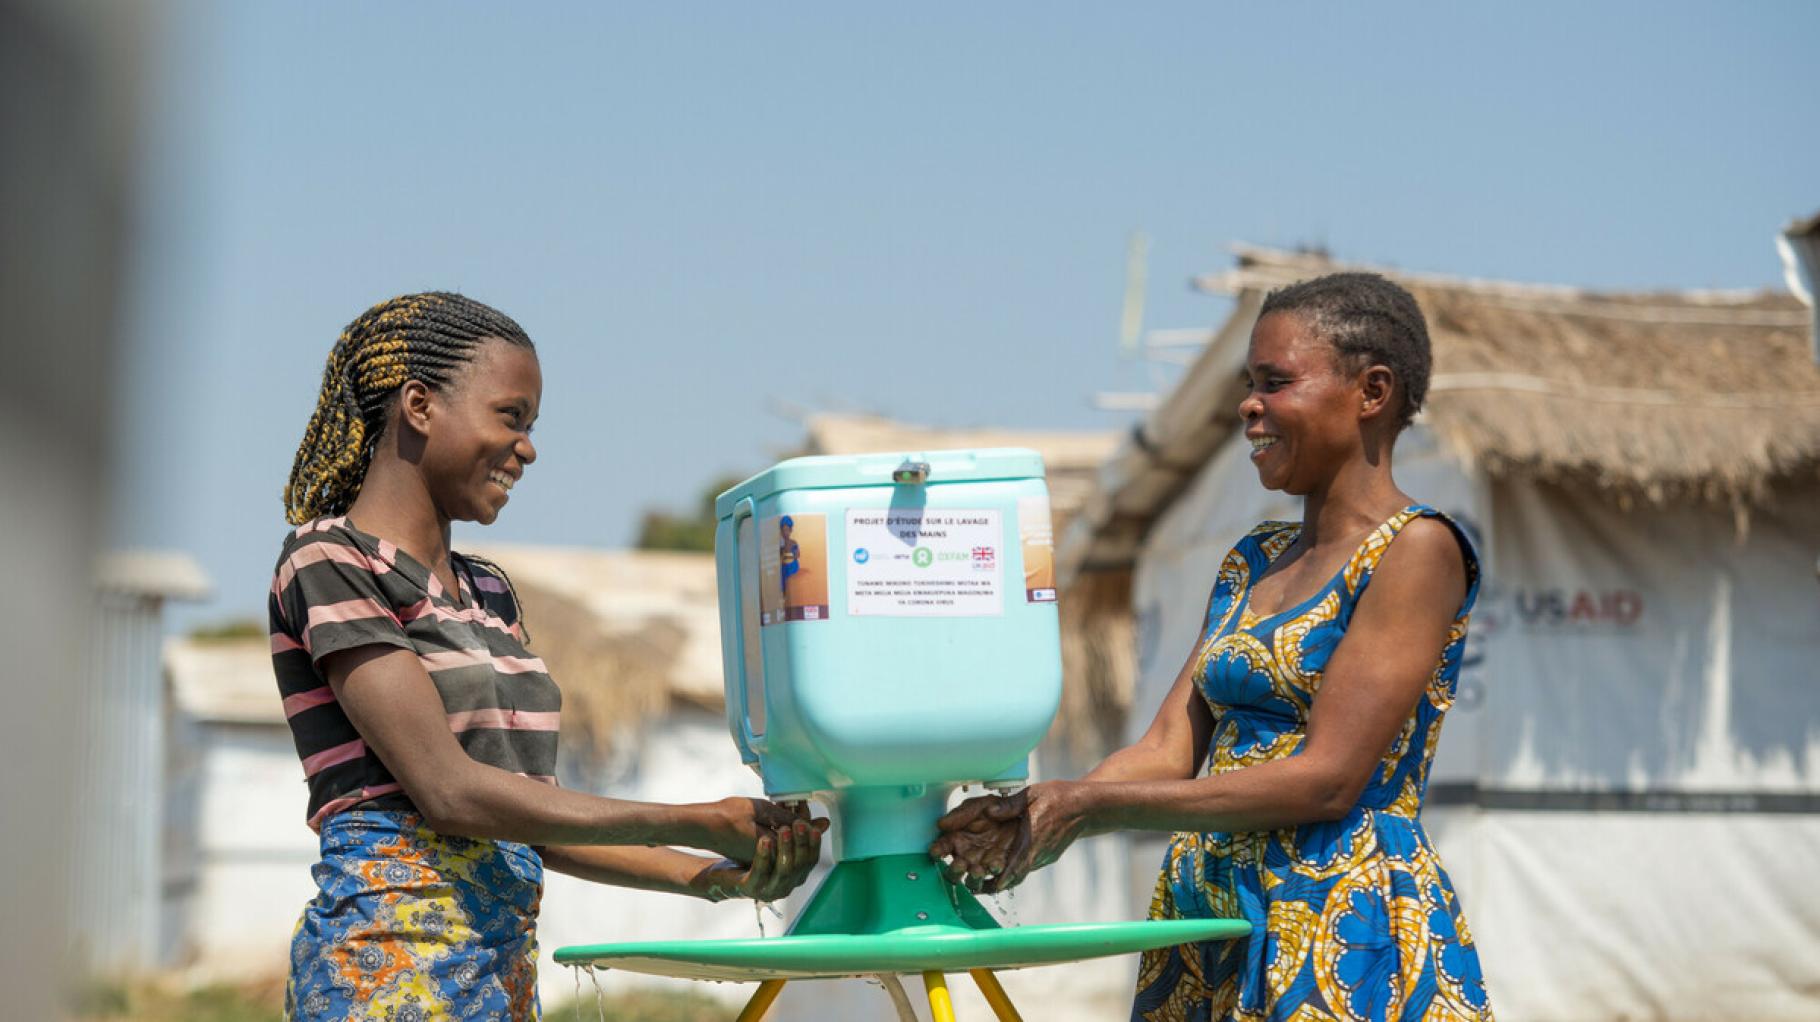 Zwei Frauen waschen ihre Hände an einer Handwasch-Station im Geflüchtetencamp in Kisalaba (Demokratische Republik Kongo). Die Frauen schauen einander lächelnd an.